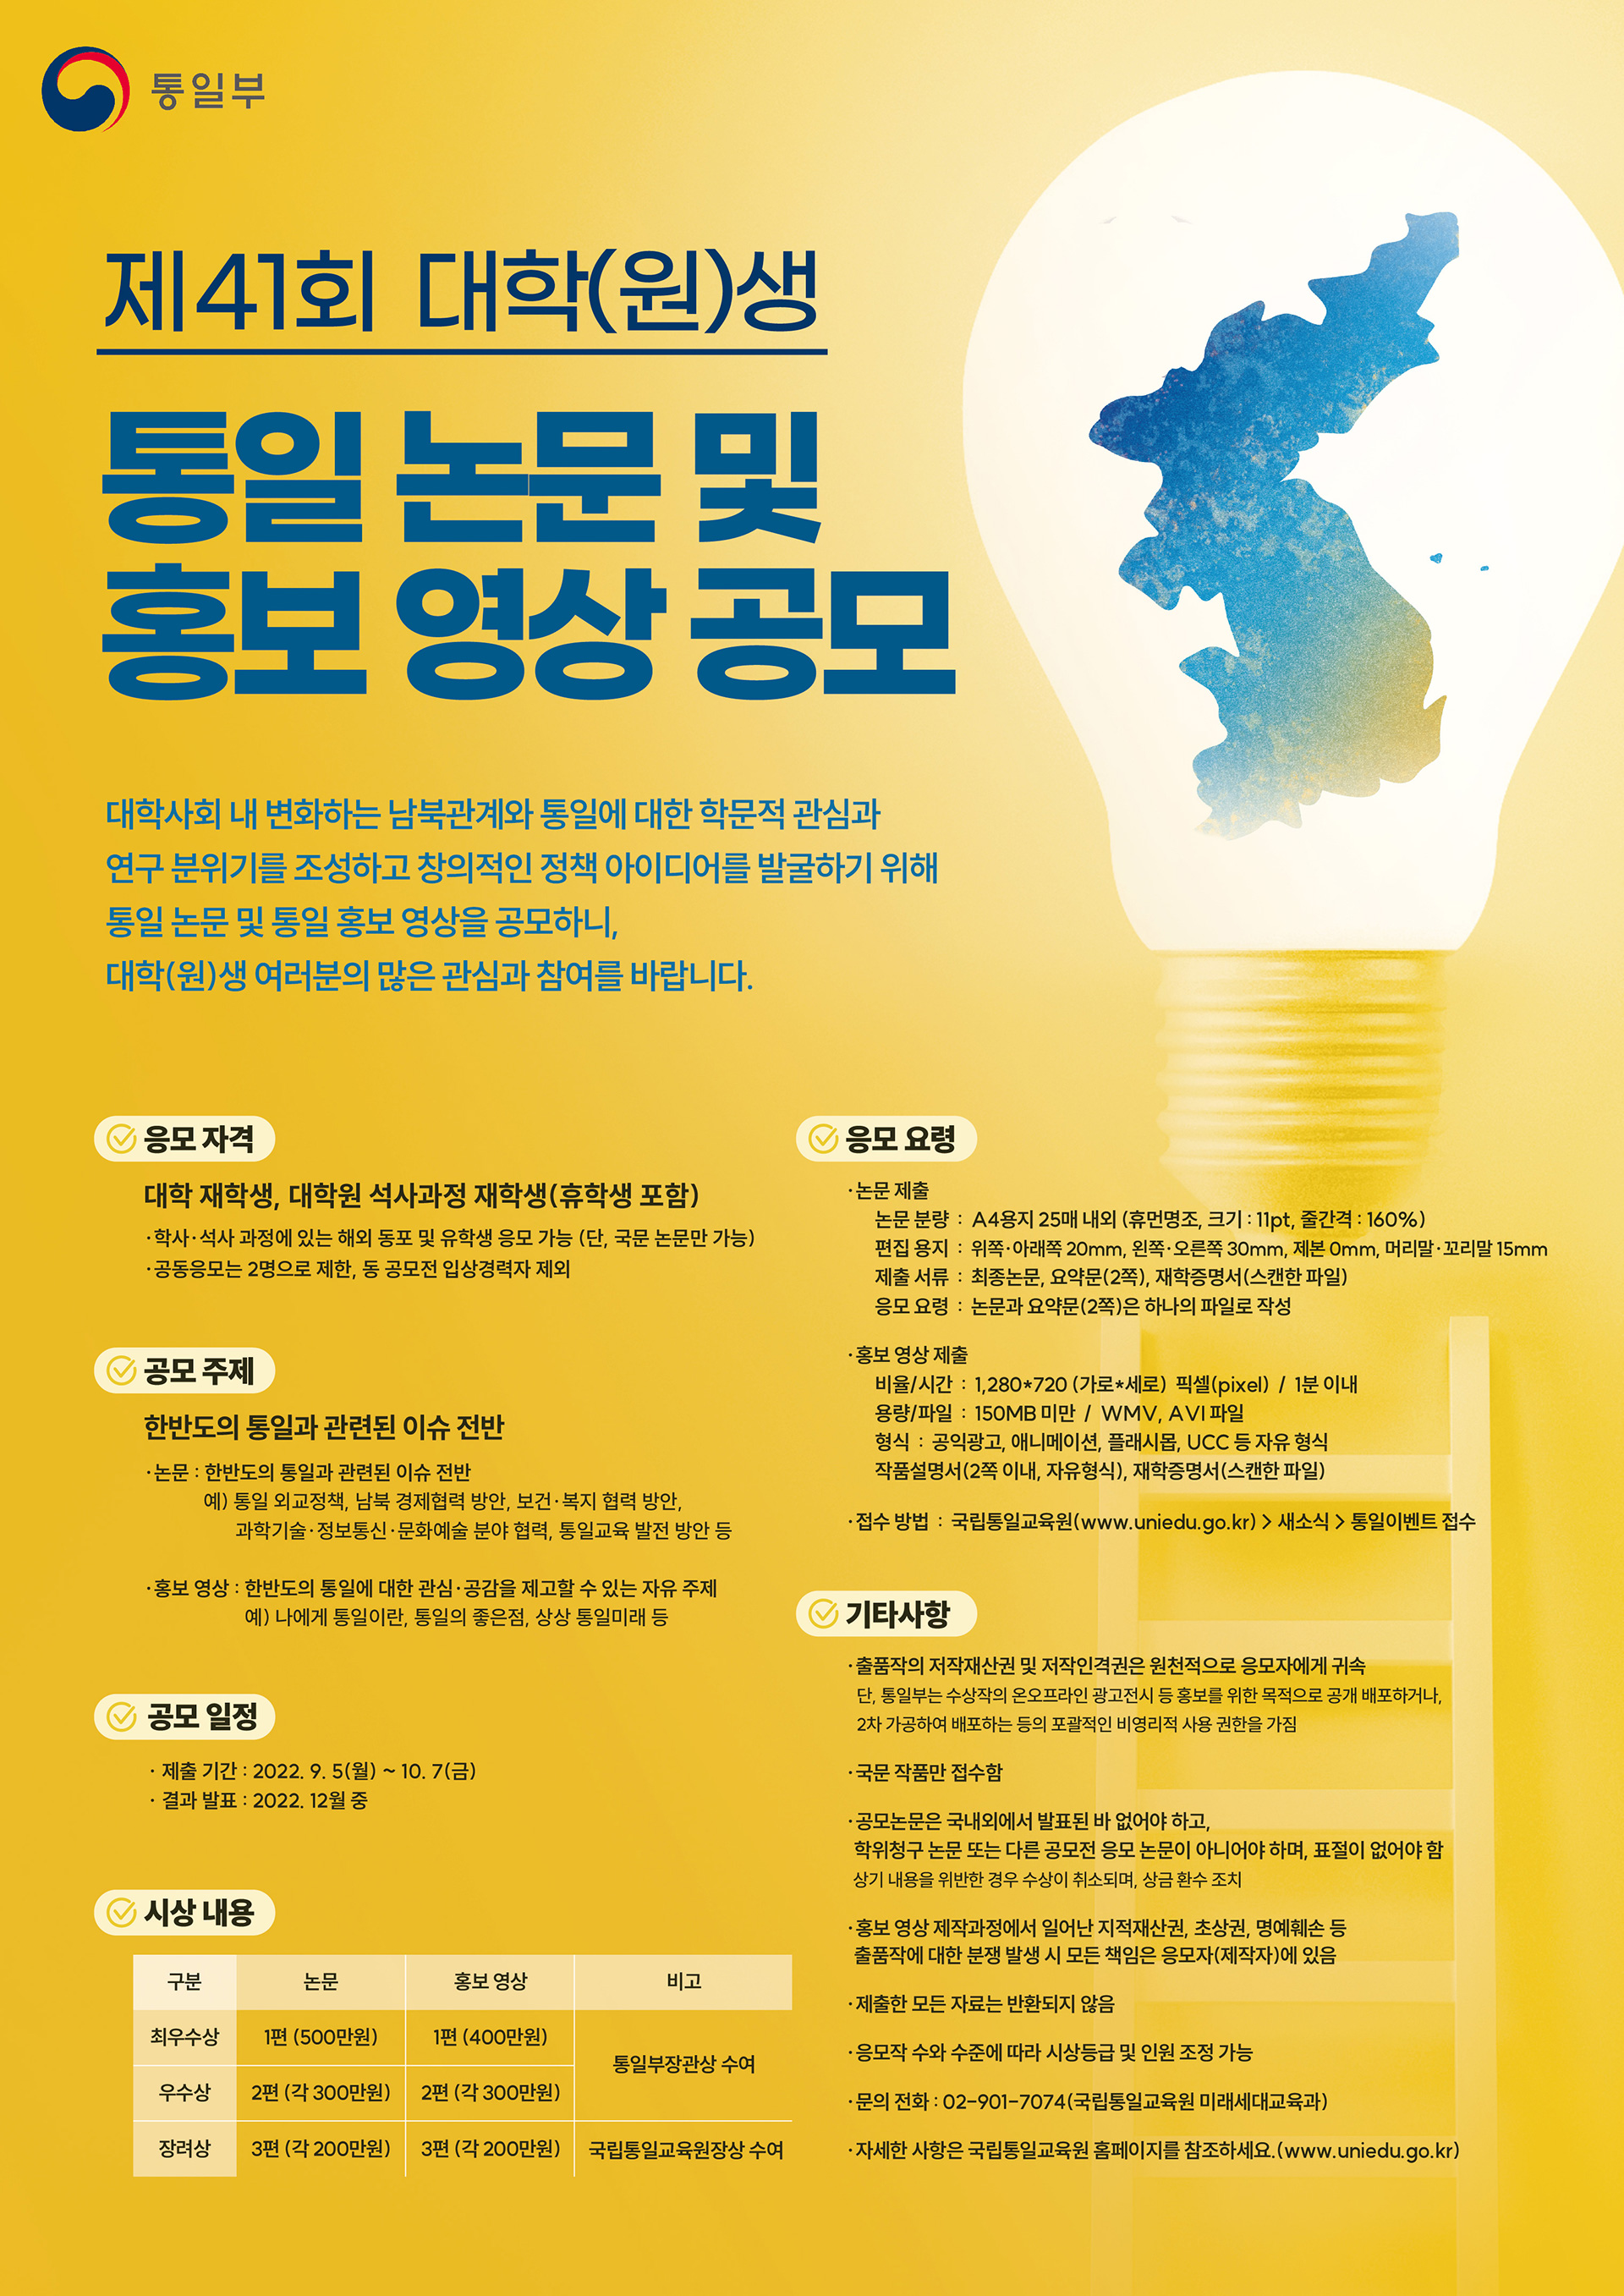 제41회 대학(원)생 통일 논문 및 홍보 영상 공모